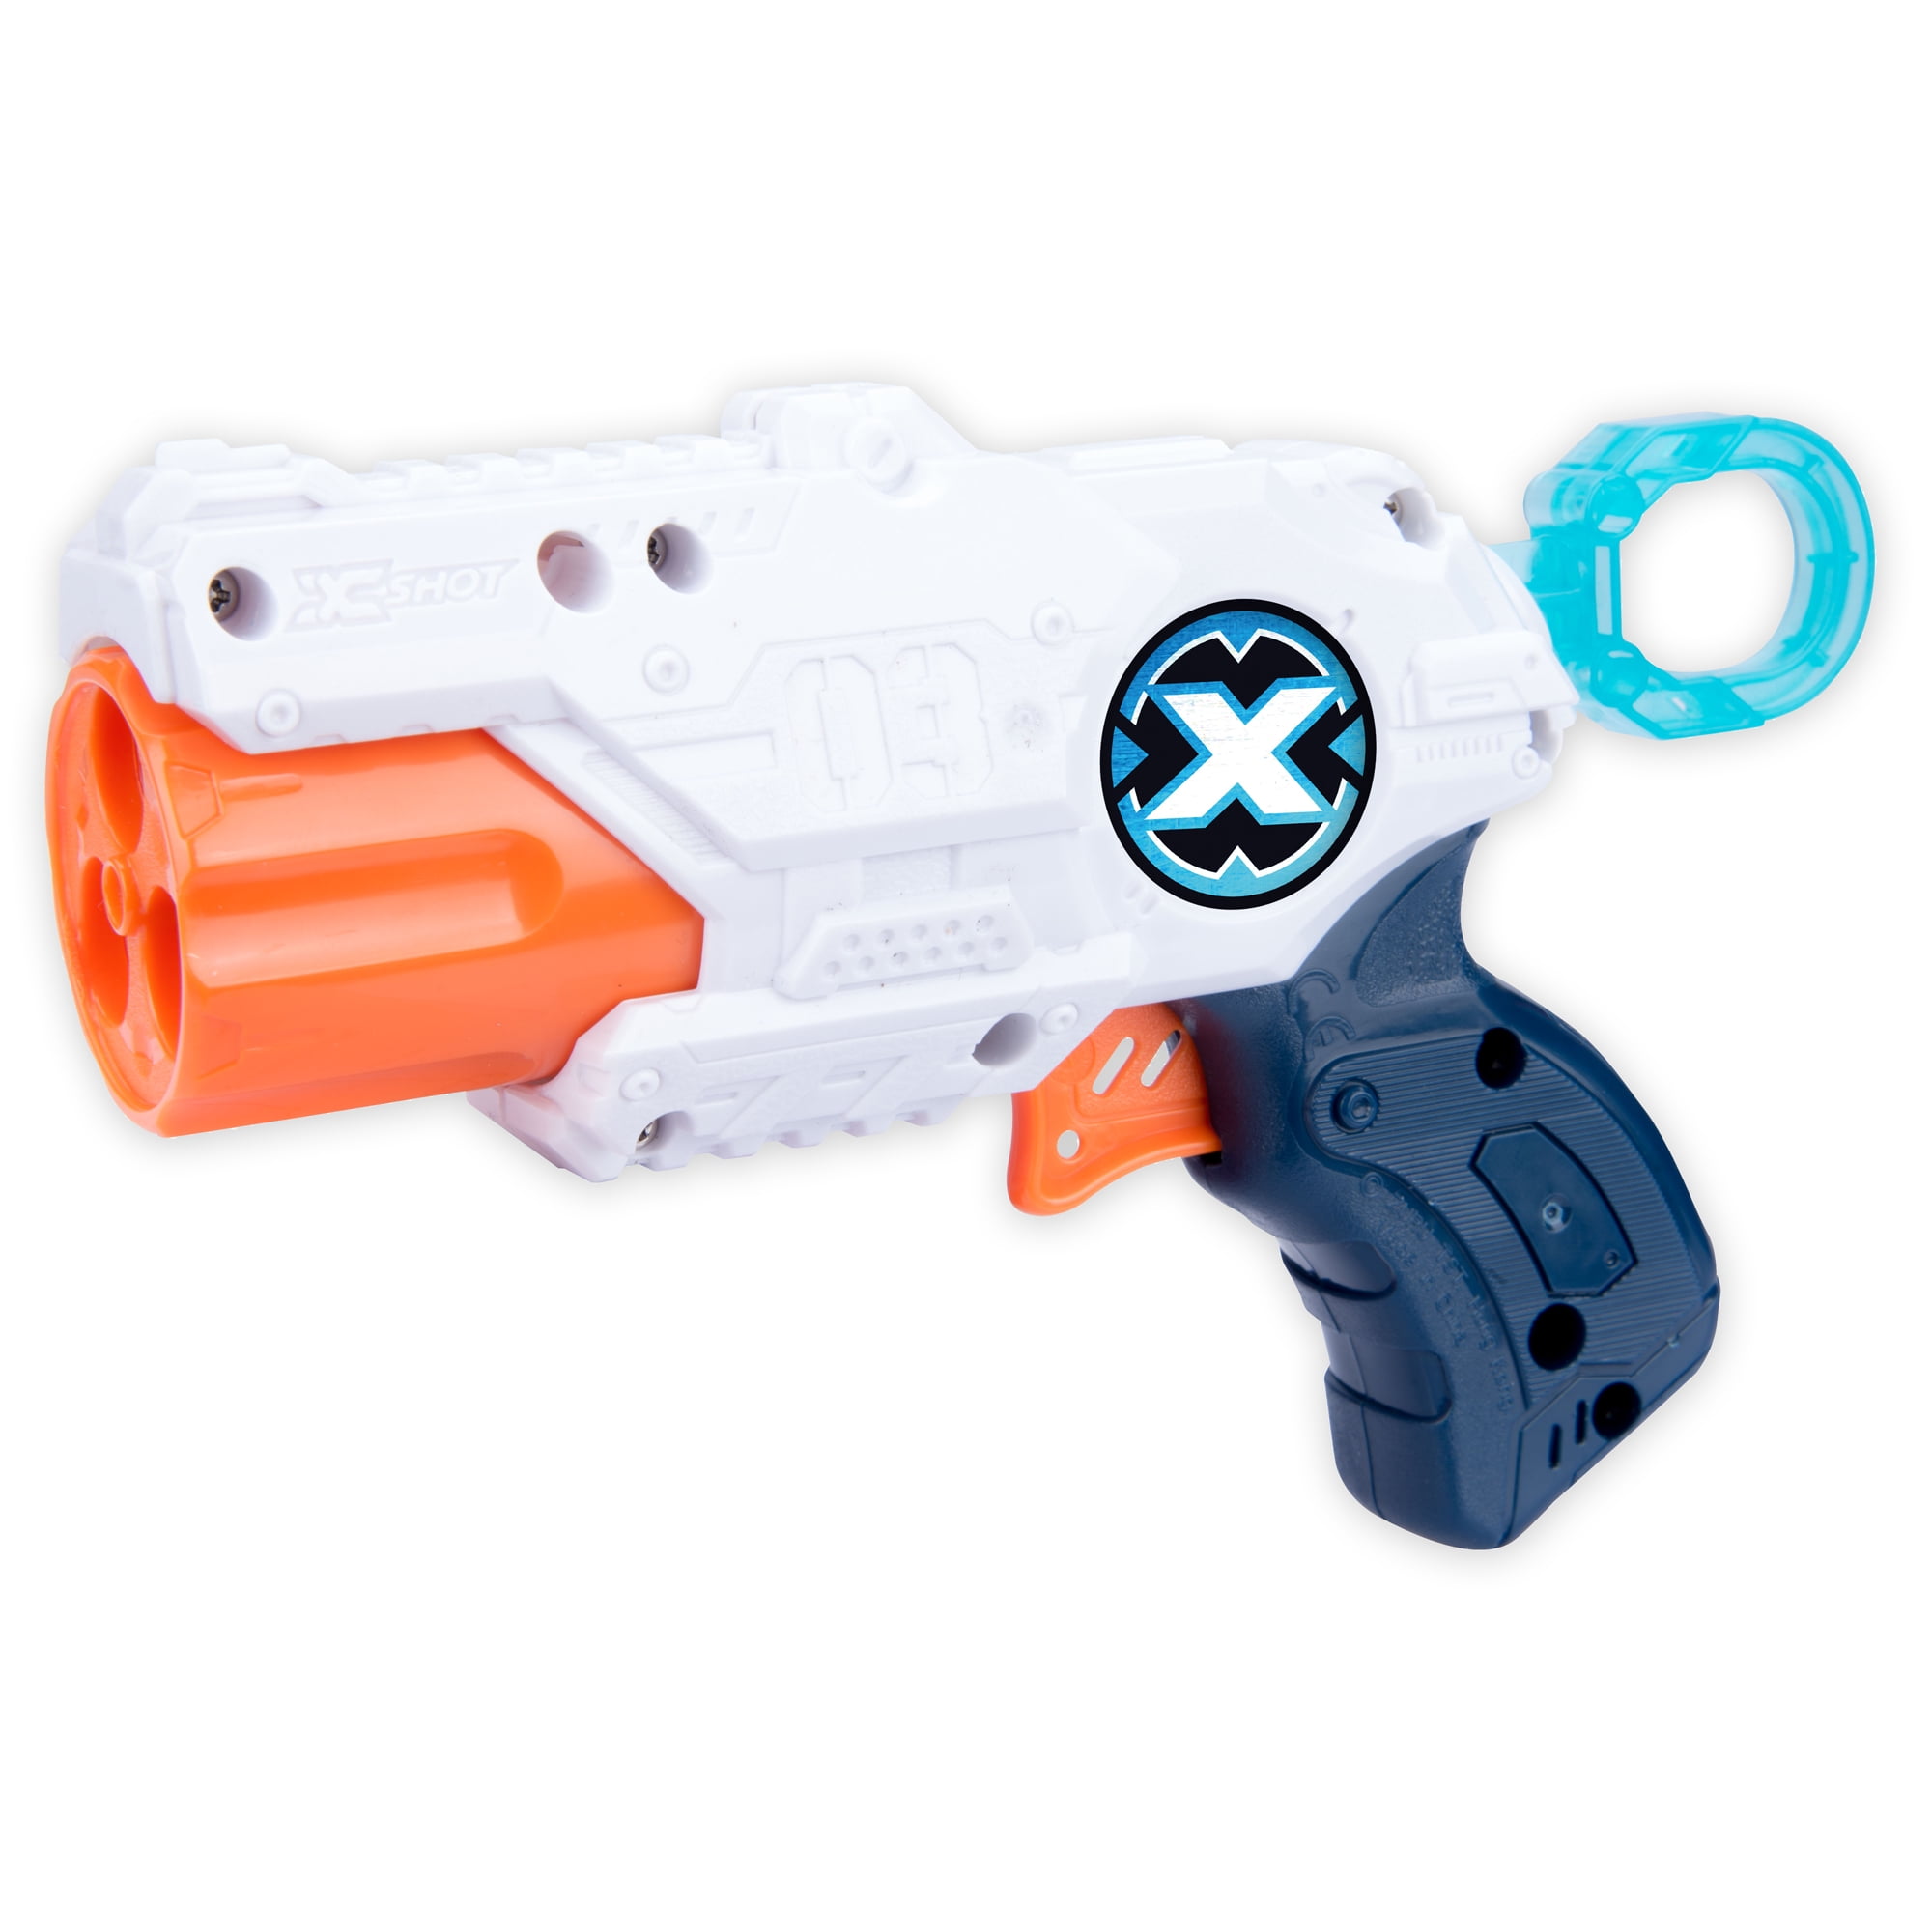 Nerf Gun Zuru X Shot MK3 Includes 12 Foam Darts XShot Toy Gun New 